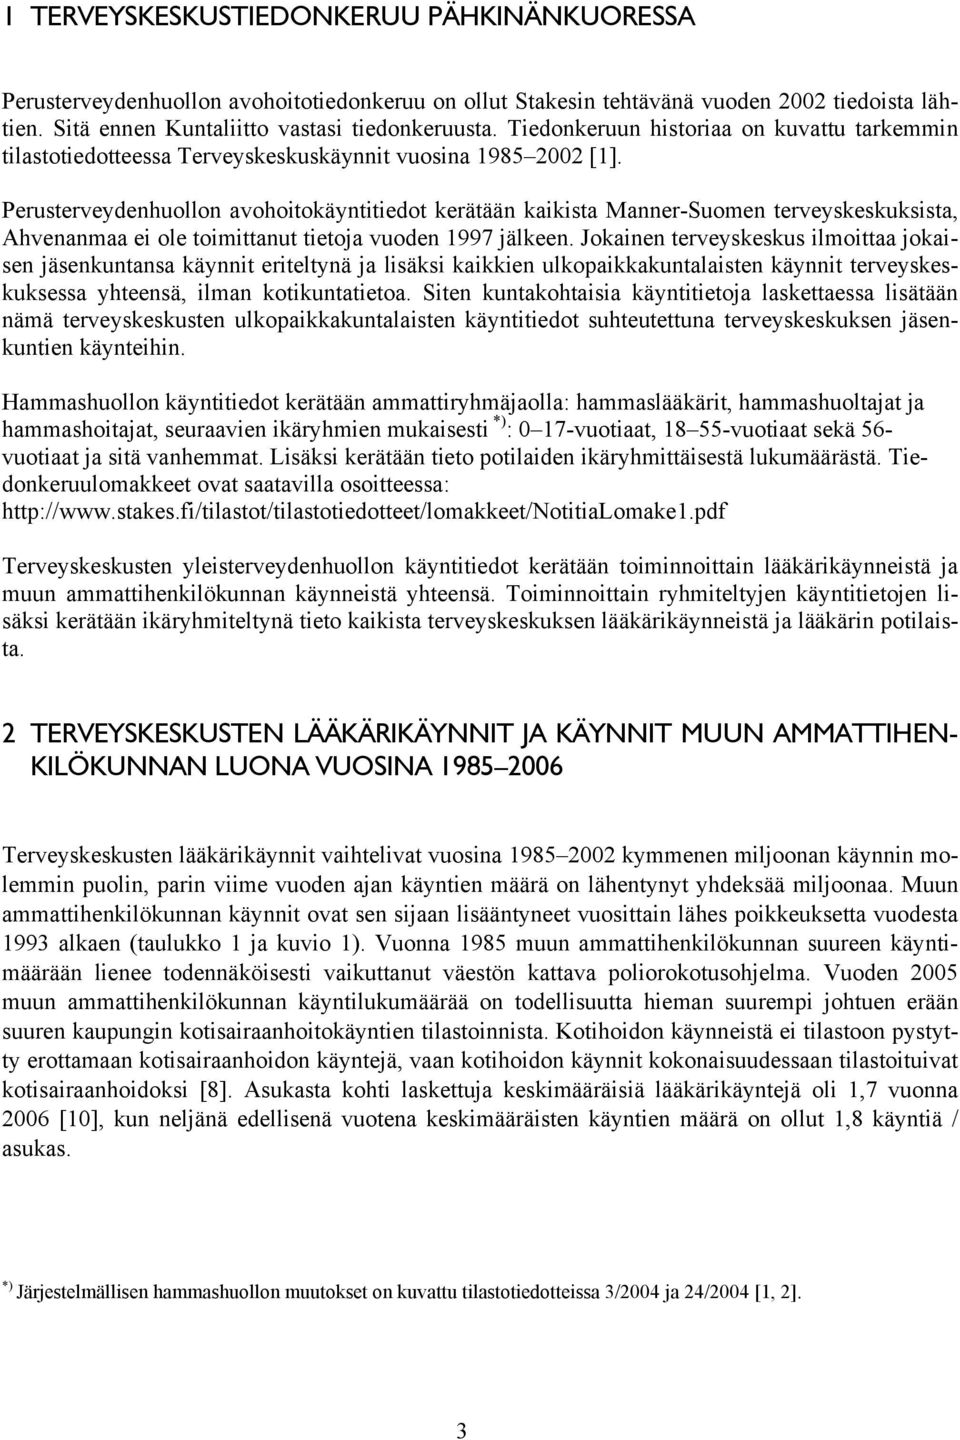 Perusterveydenhuollon avohoitokäyntitiedot kerätään kaikista Manner-Suomen terveyskeskuksista, Ahvenanmaa ei ole toimittanut tietoja vuoden 1997 jälkeen.